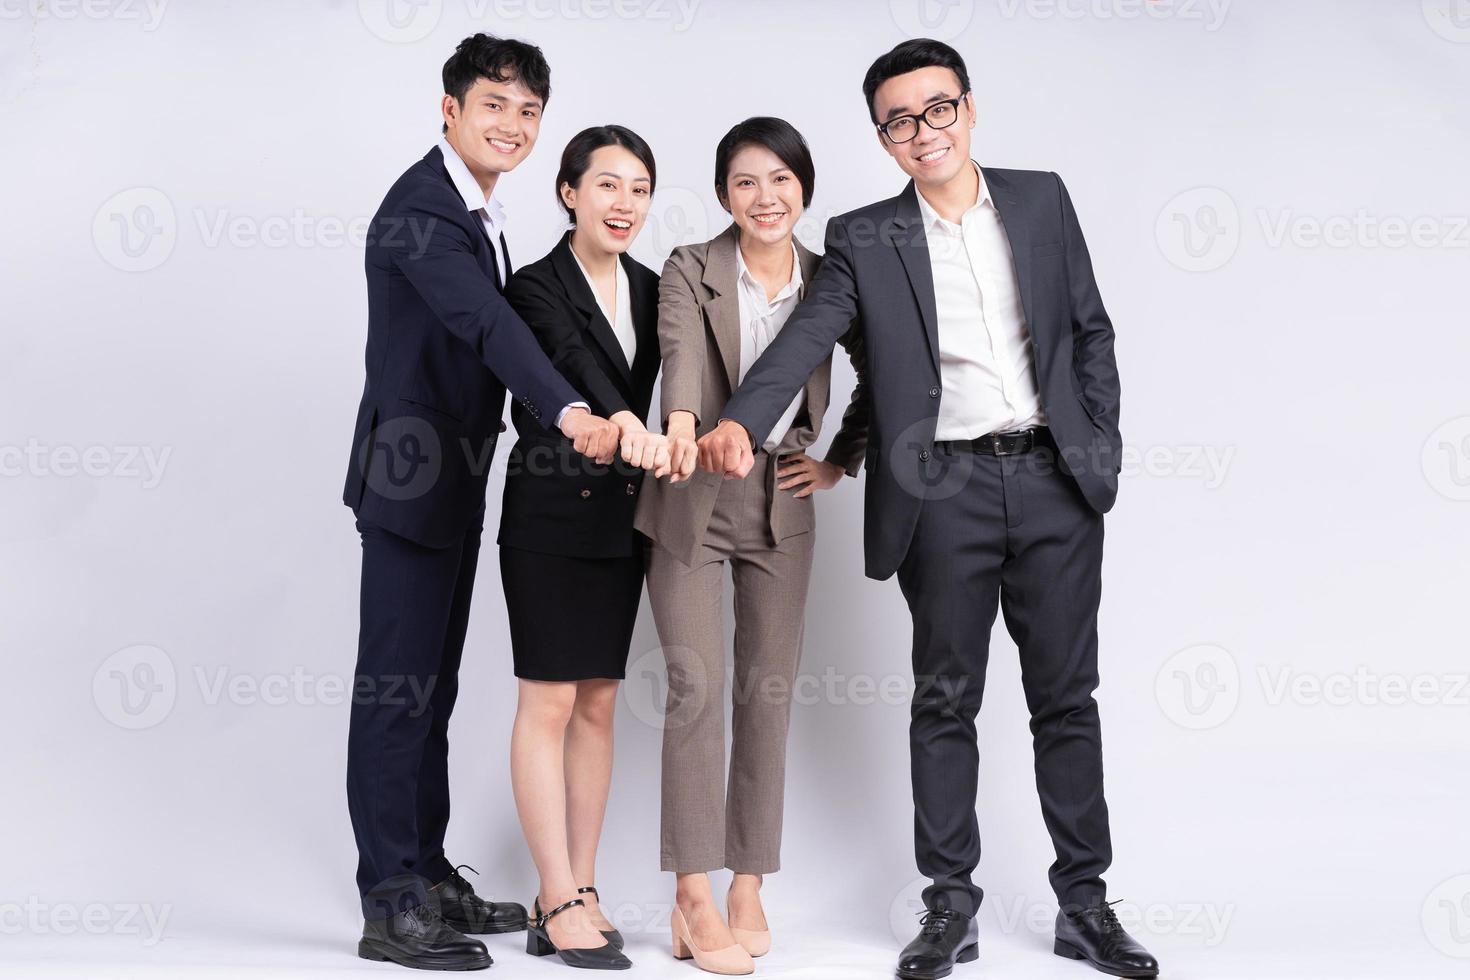 groep Aziatische zakenmensen die zich voordeed op een witte achtergrond foto